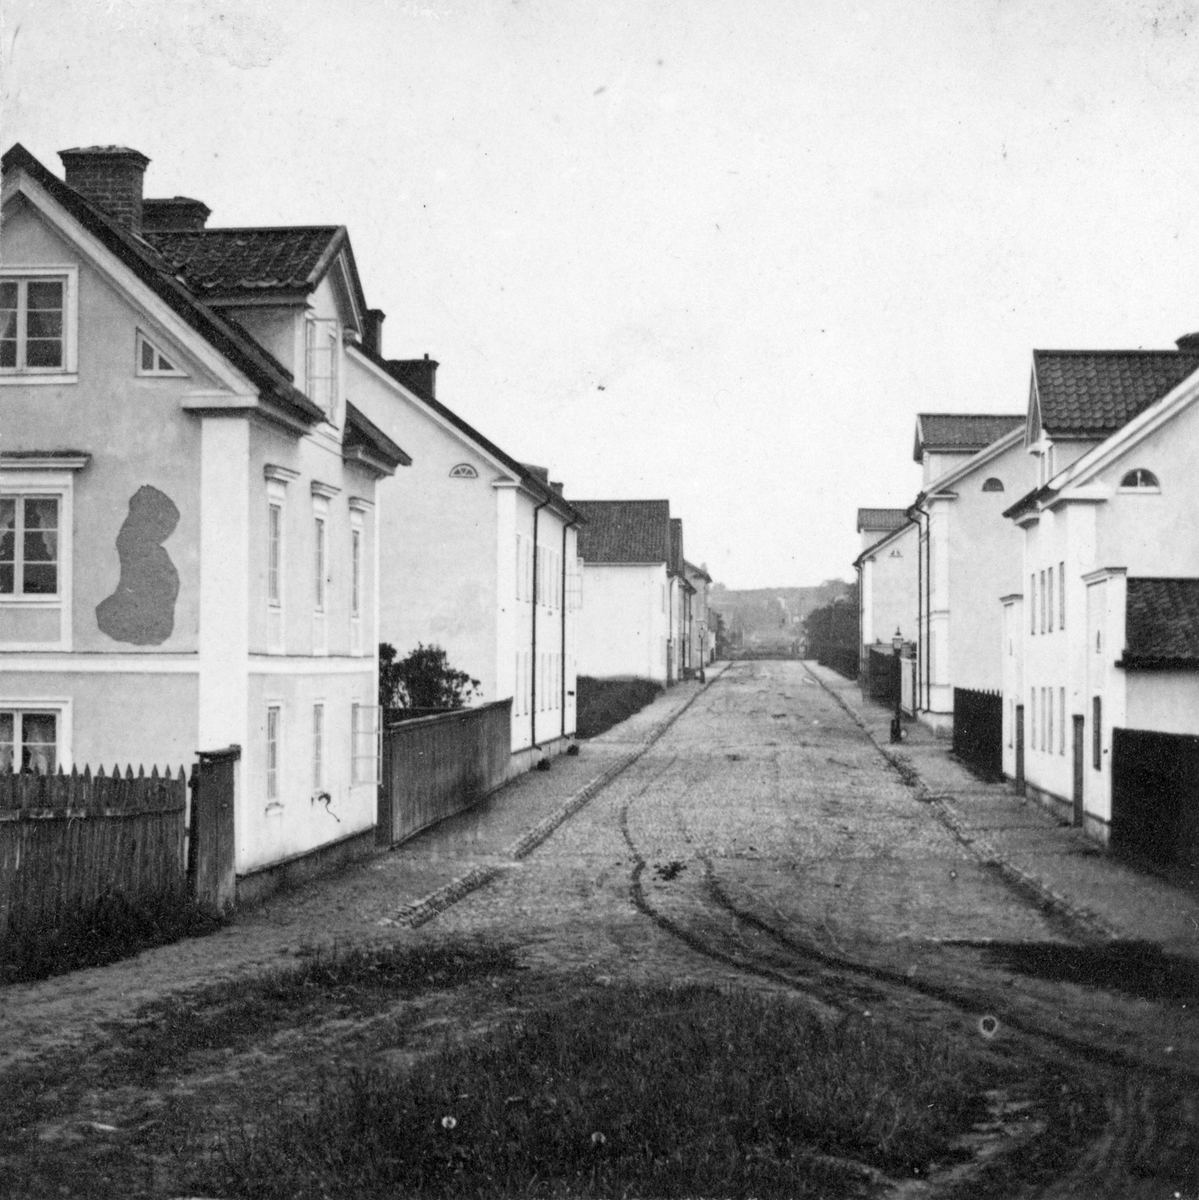 Suddig men unik vy från Linköping. Drottninggatan sedd västerut från Magasintorget. Avsaknaden av senare, känd förändring av miljön daterar bilden till före 1869. Fototiden uppskattad till omkring 1865.